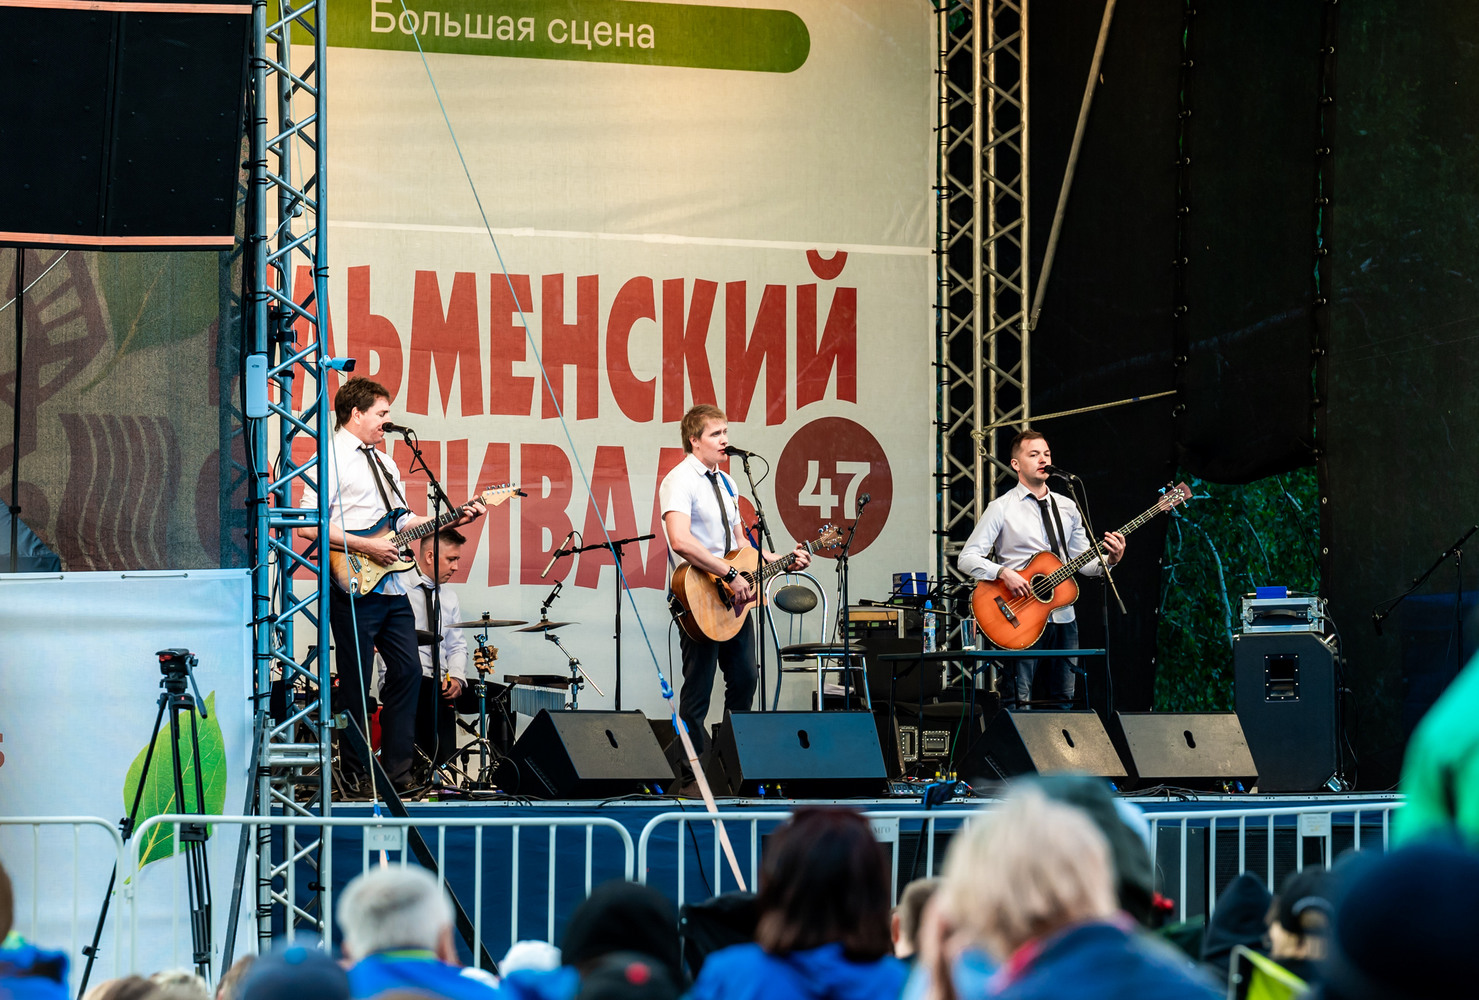 Олег Митяев выступил на Южном Урале: кадры с Ильменского фестиваля